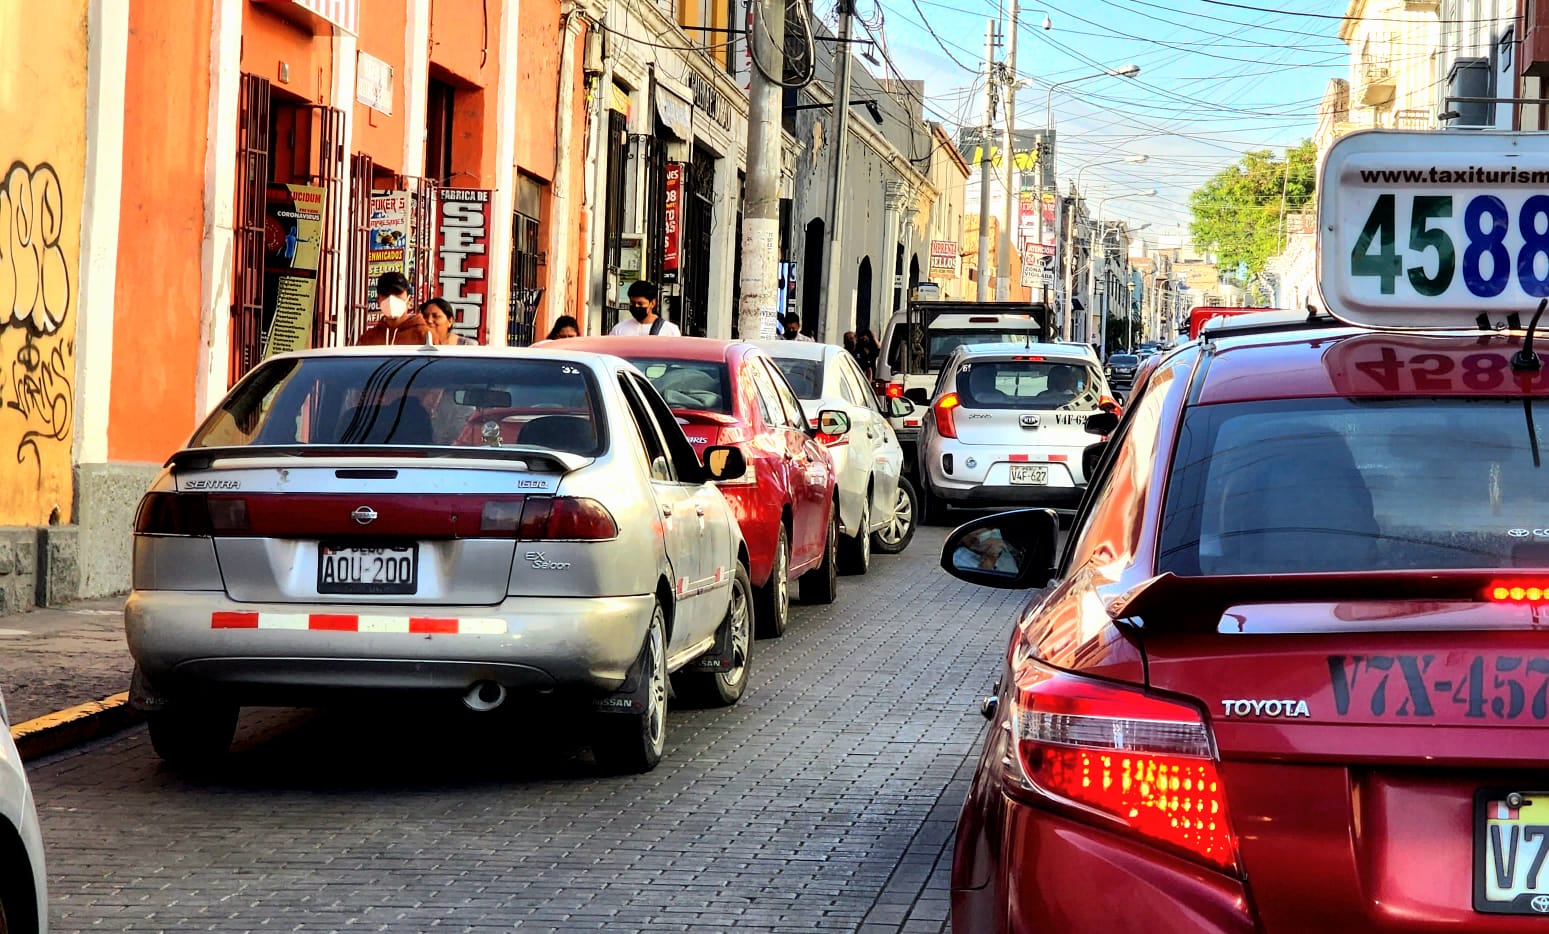 Caos y congestión vehicular se registra en el Cercado de Arequipa, ante ausencia de las autoridades